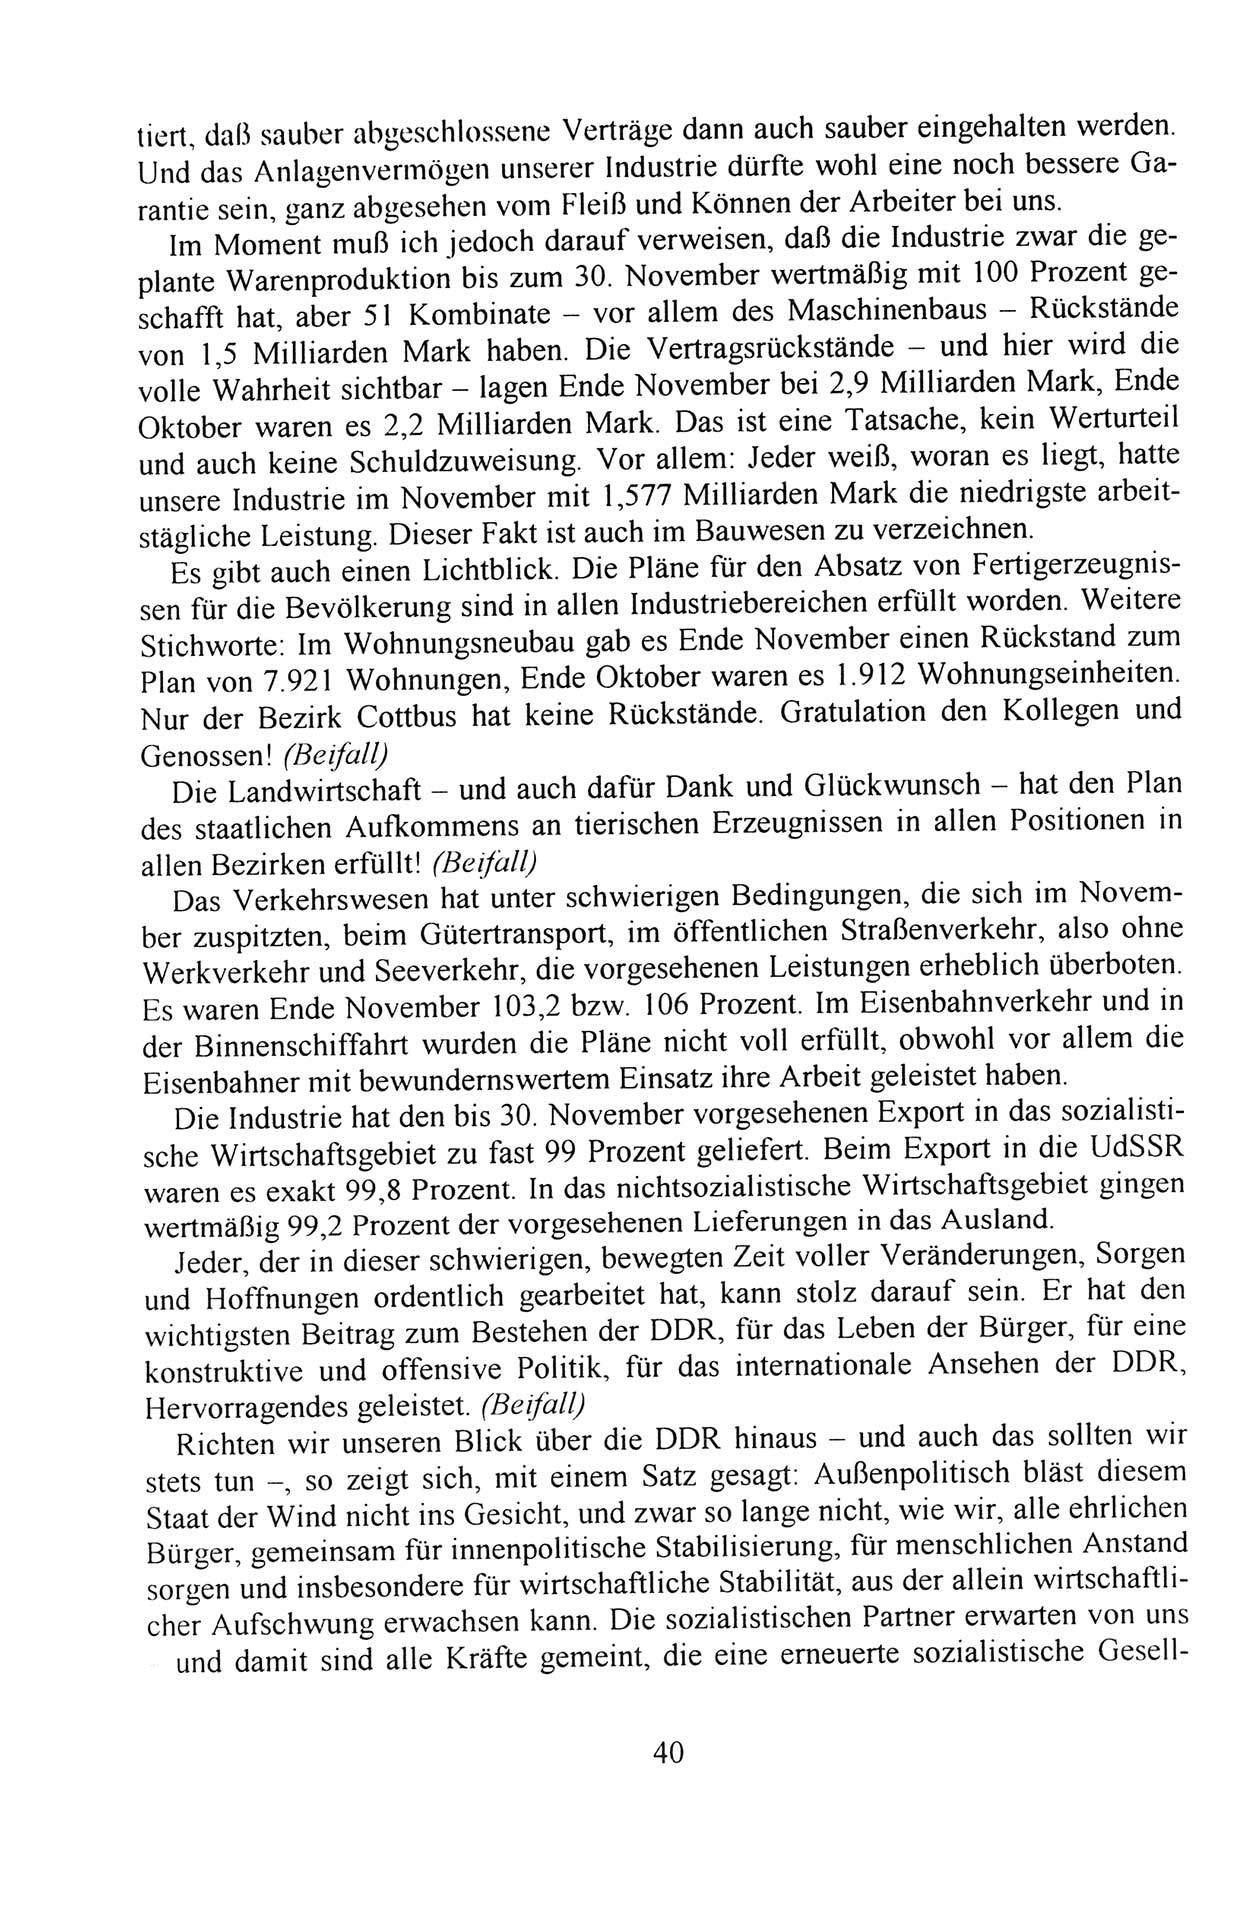 Außerordentlicher Parteitag der SED/PDS (Sozialistische Einheitspartei Deutschlands/Partei des Demokratischen Sozialismus) [Deutsche Demokratische Republik (DDR)], Protokoll der Beratungen am 8./9. und 16./17.12.1989 in Berlin 1989, Seite 40 (PT. SED/PDS DDR Prot. 1989, S. 40)